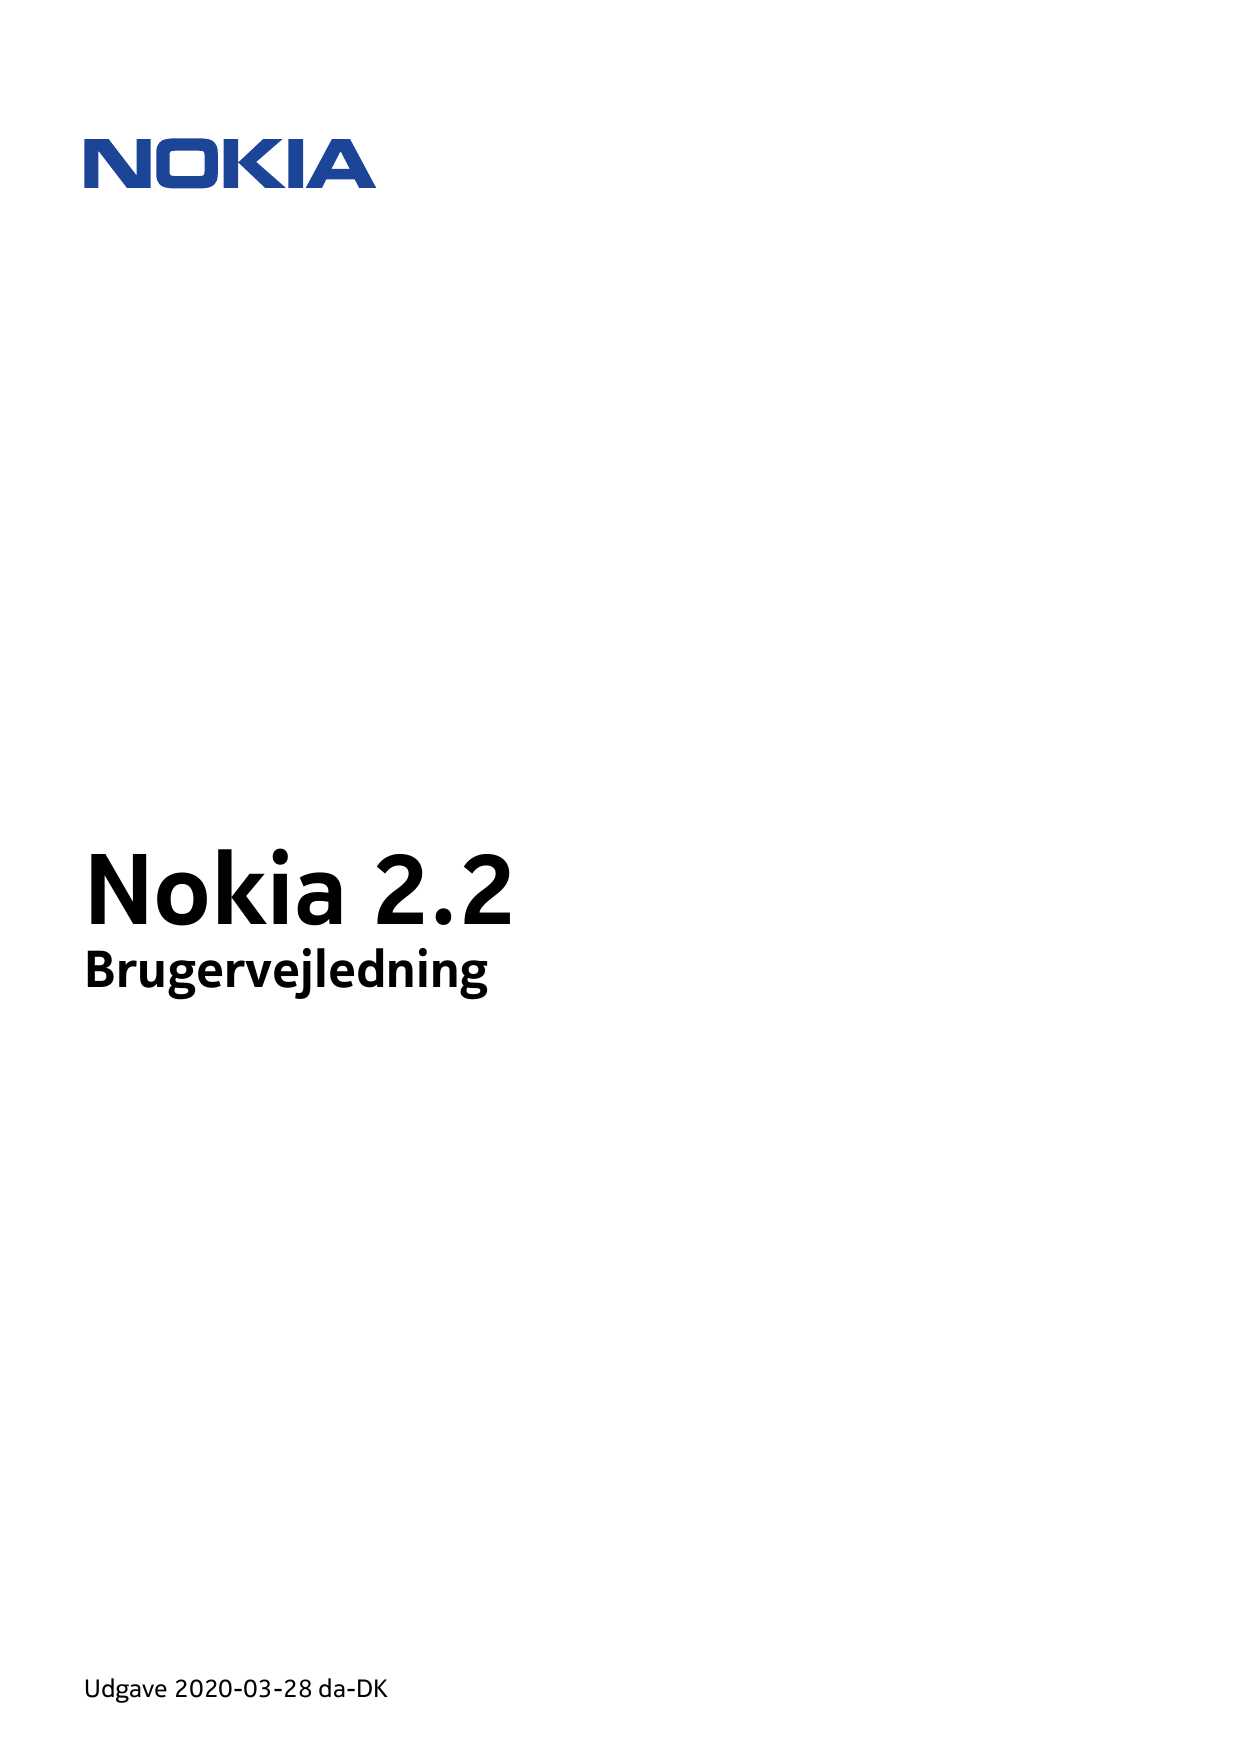 Nokia 2.2BrugervejledningUdgave 2020-03-28 da-DK